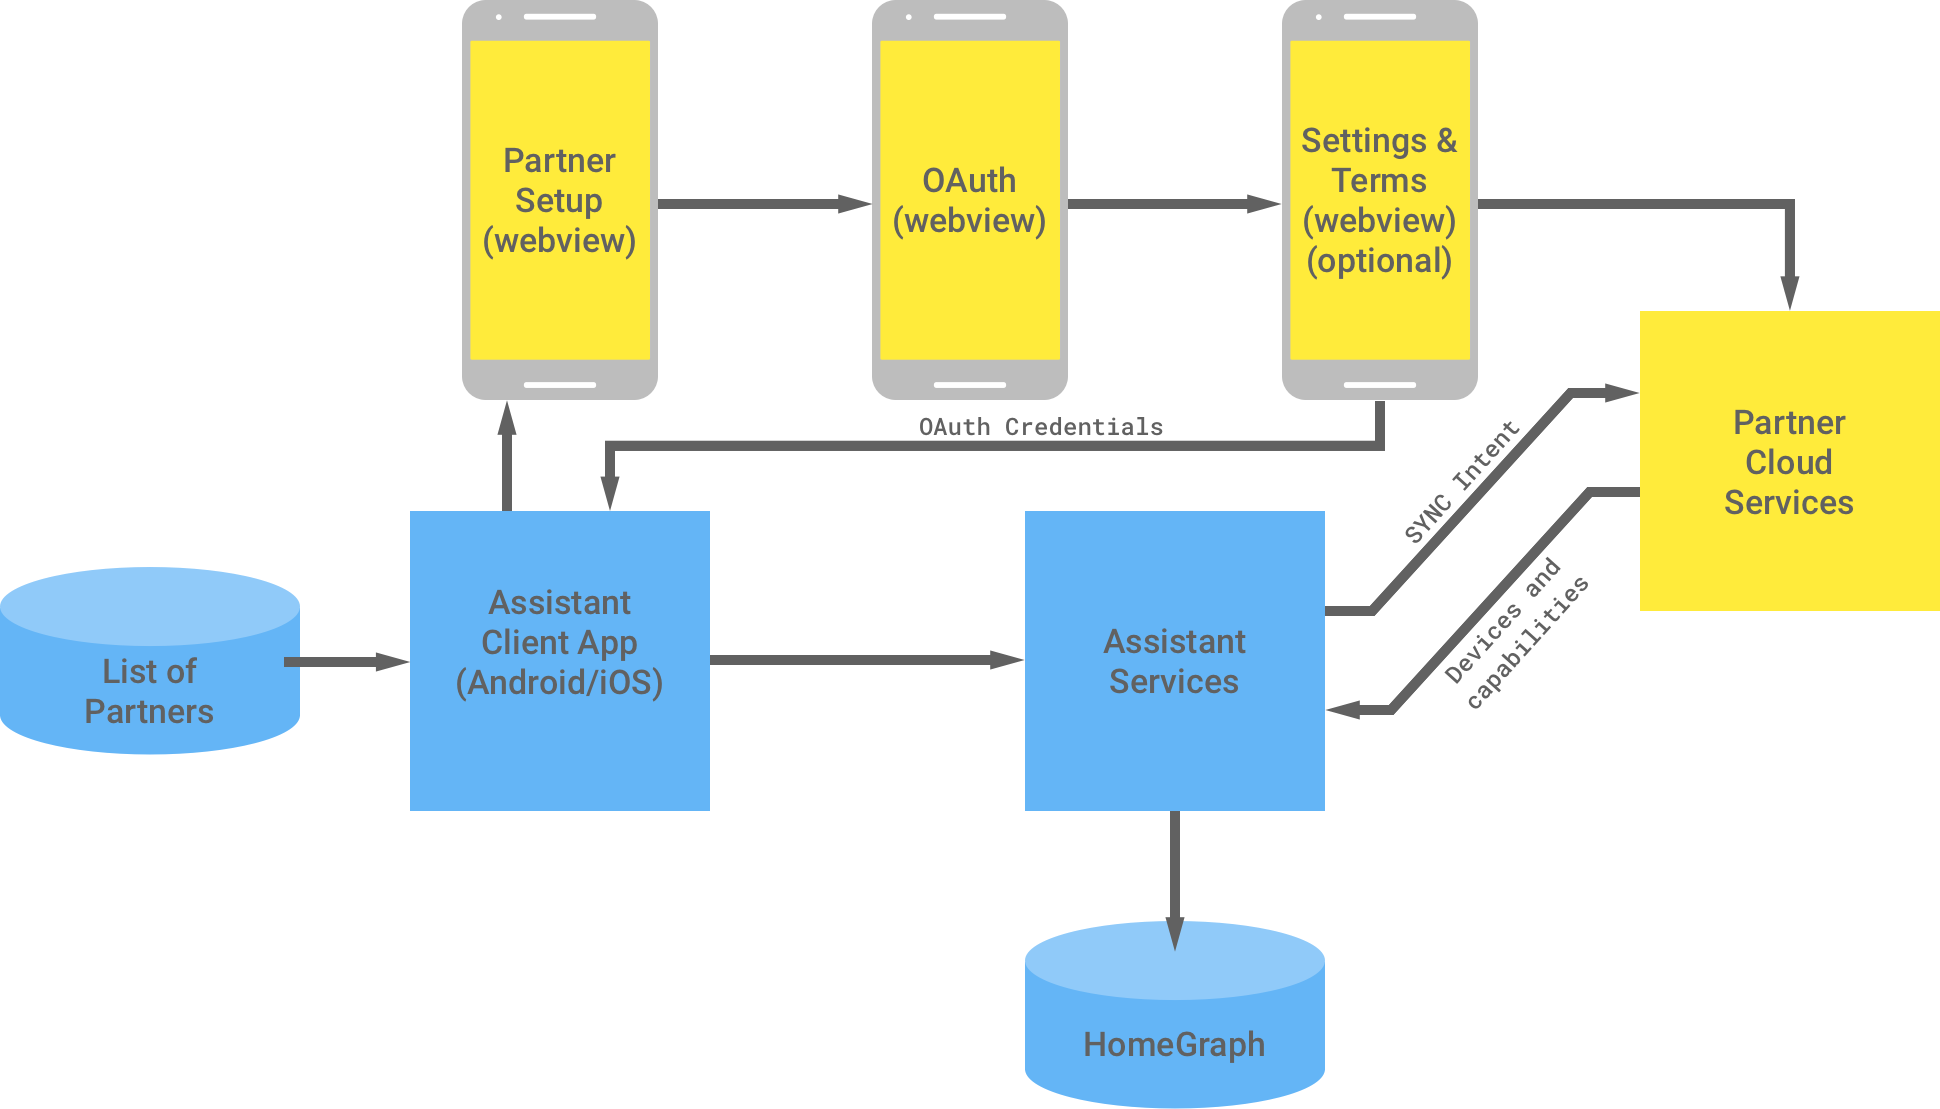 En esta figura, se muestra la interacción entre la infraestructura de Google y la infraestructura del socio. Desde la infraestructura de Google, hay una lista de socios disponibles para la app cliente de Asistente, que, luego, fluye a la infraestructura del socio a fin de completar la autenticación de OAuth. La autenticación de OAuth del lado del socio es la configuración web, la vista web de OAuth, las condiciones y los parámetros de configuración opcionales del socio, y los servicios en la nube del socio. Luego, la infraestructura del socio muestra las credenciales de OAuth a la app cliente del Asistente. Los servicios en la nube del socio envían dispositivos y capacidades disponibles a los servicios del Asistente, que luego almacenan la información en el Home Graph.